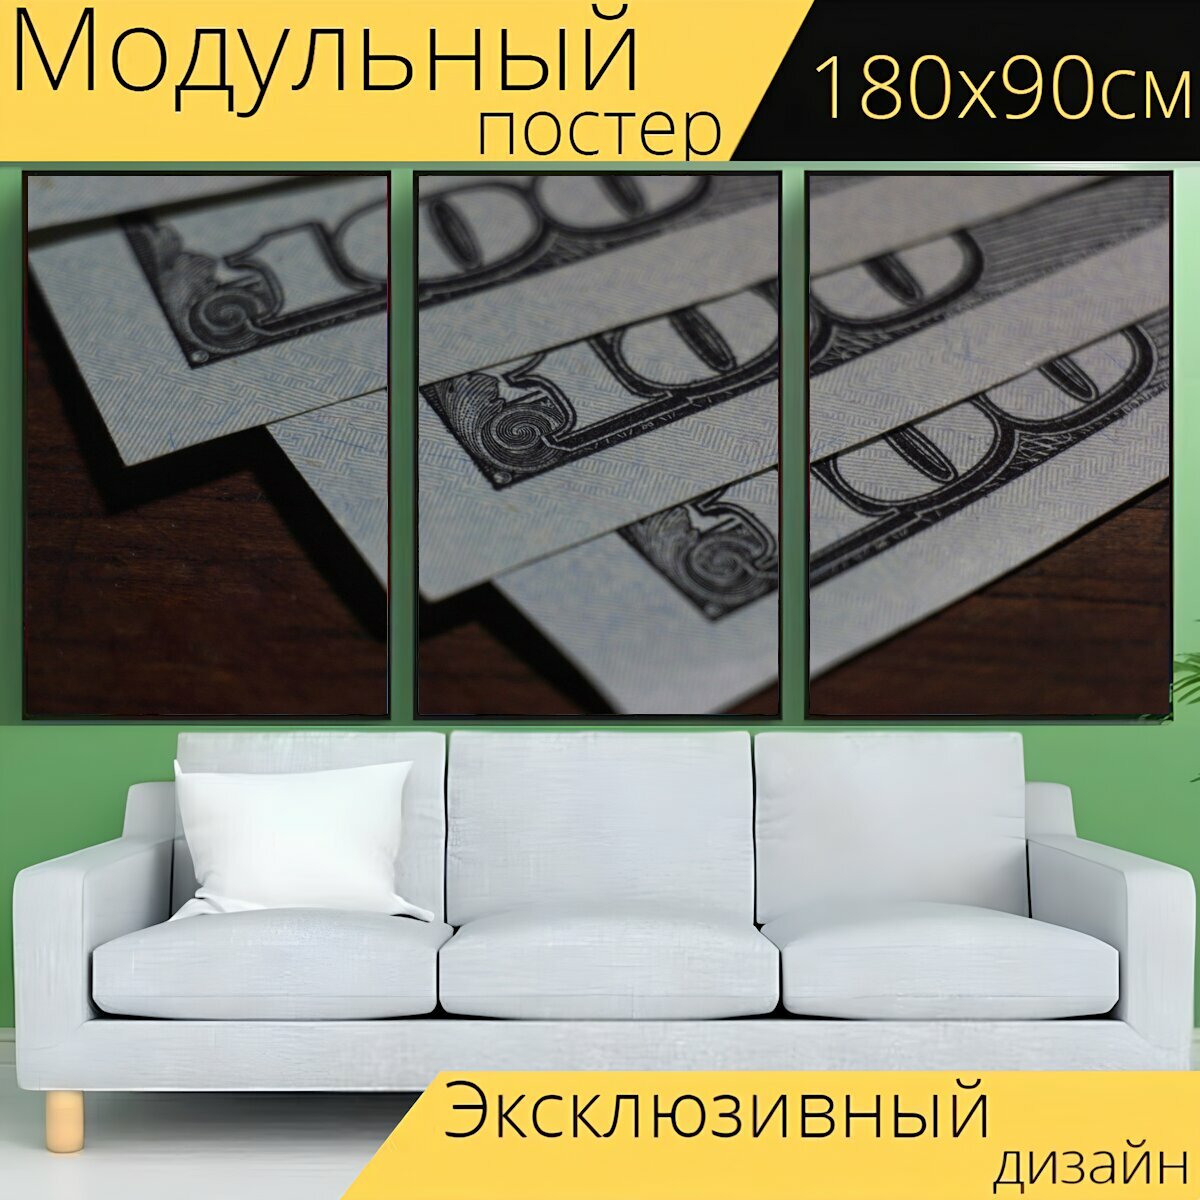 Модульный постер "Деньги, доллар, деньги билл" 180 x 90 см. для интерьера